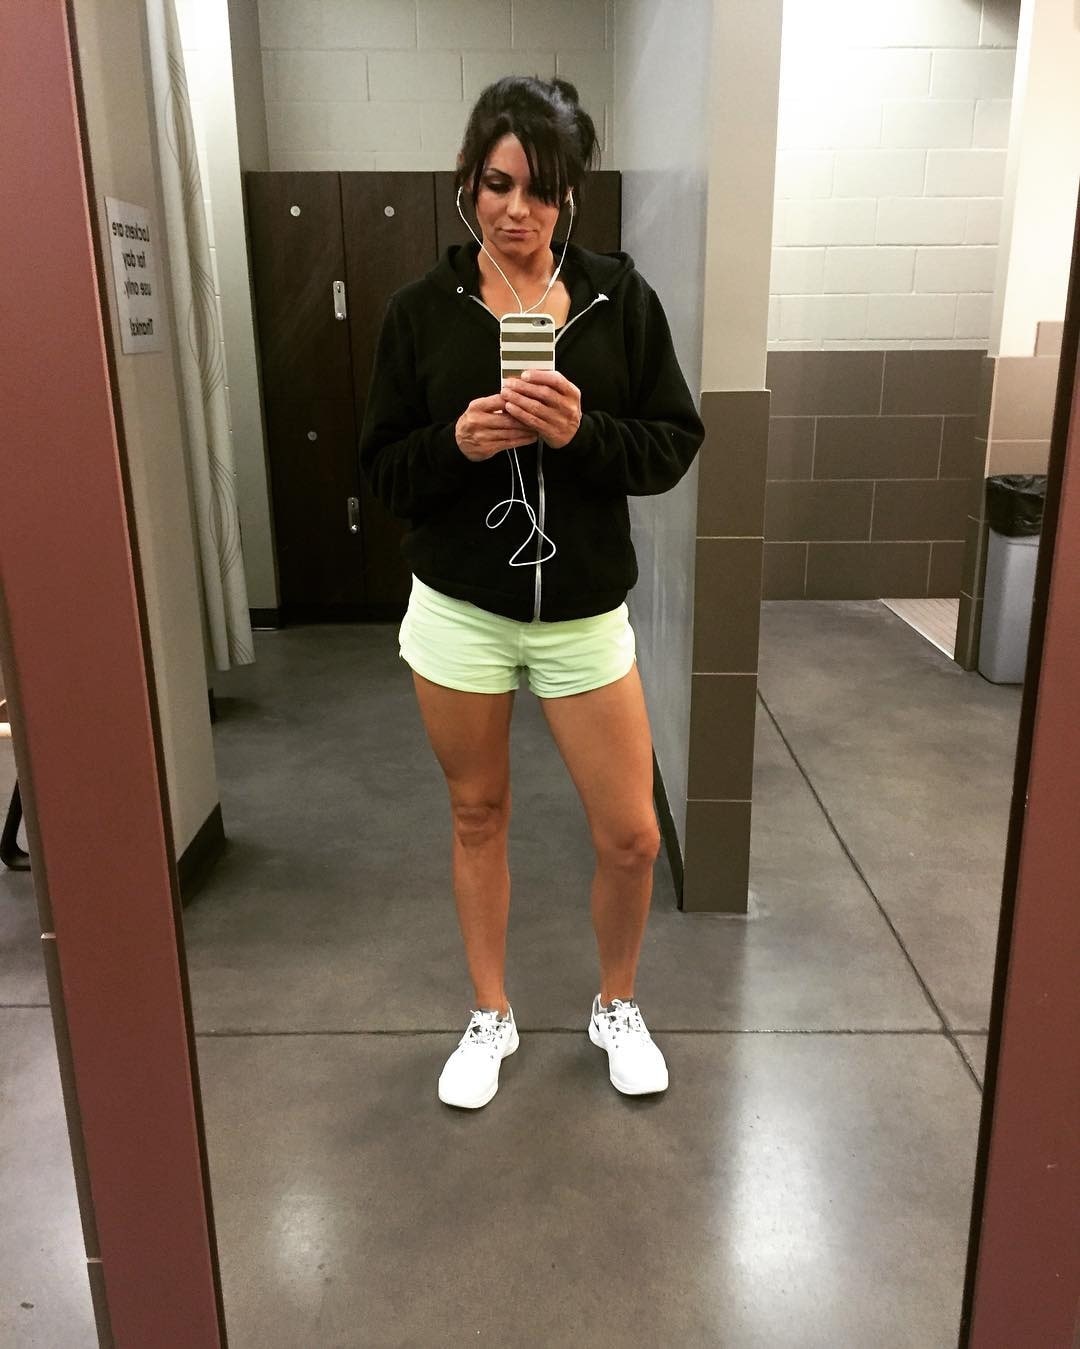 Shanna LeRoy as seen in a selfie that was taken in September 2016